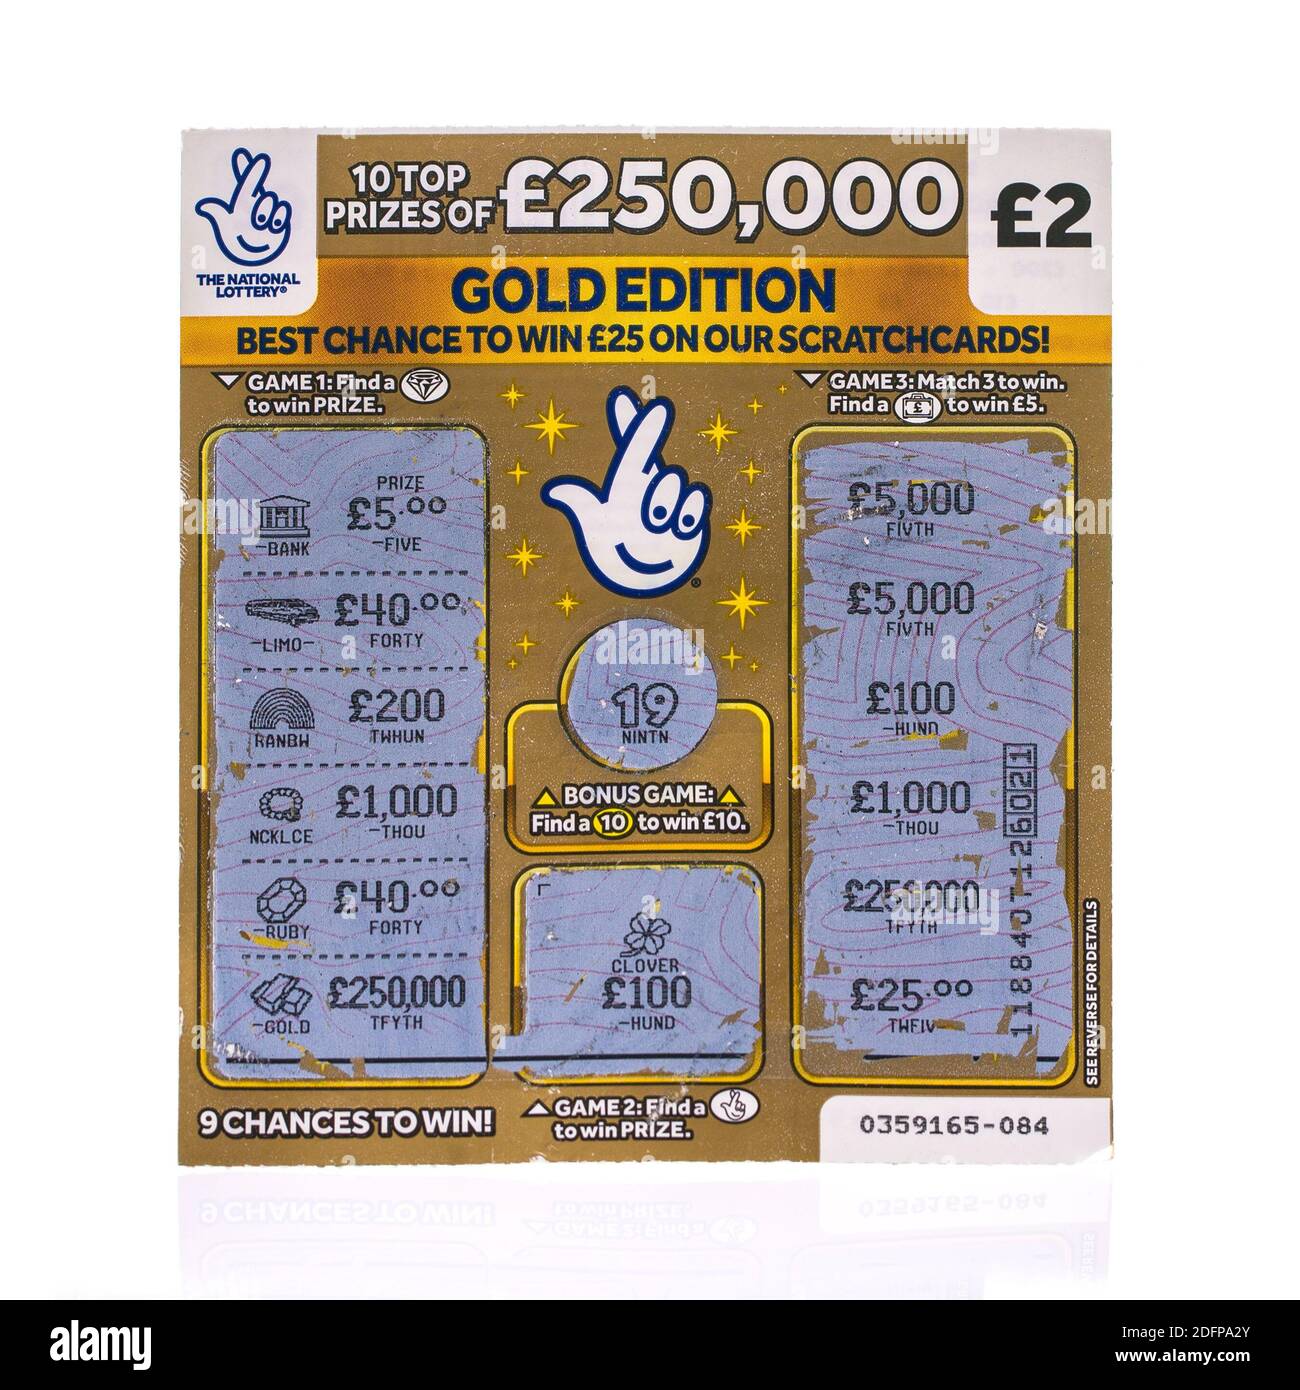 SWINDON, Royaume-Uni - 5 DÉCEMBRE 2020: Une loterie nationale d'occasion £250,000 Gold Edition scratchcard sur fond blanc Banque D'Images